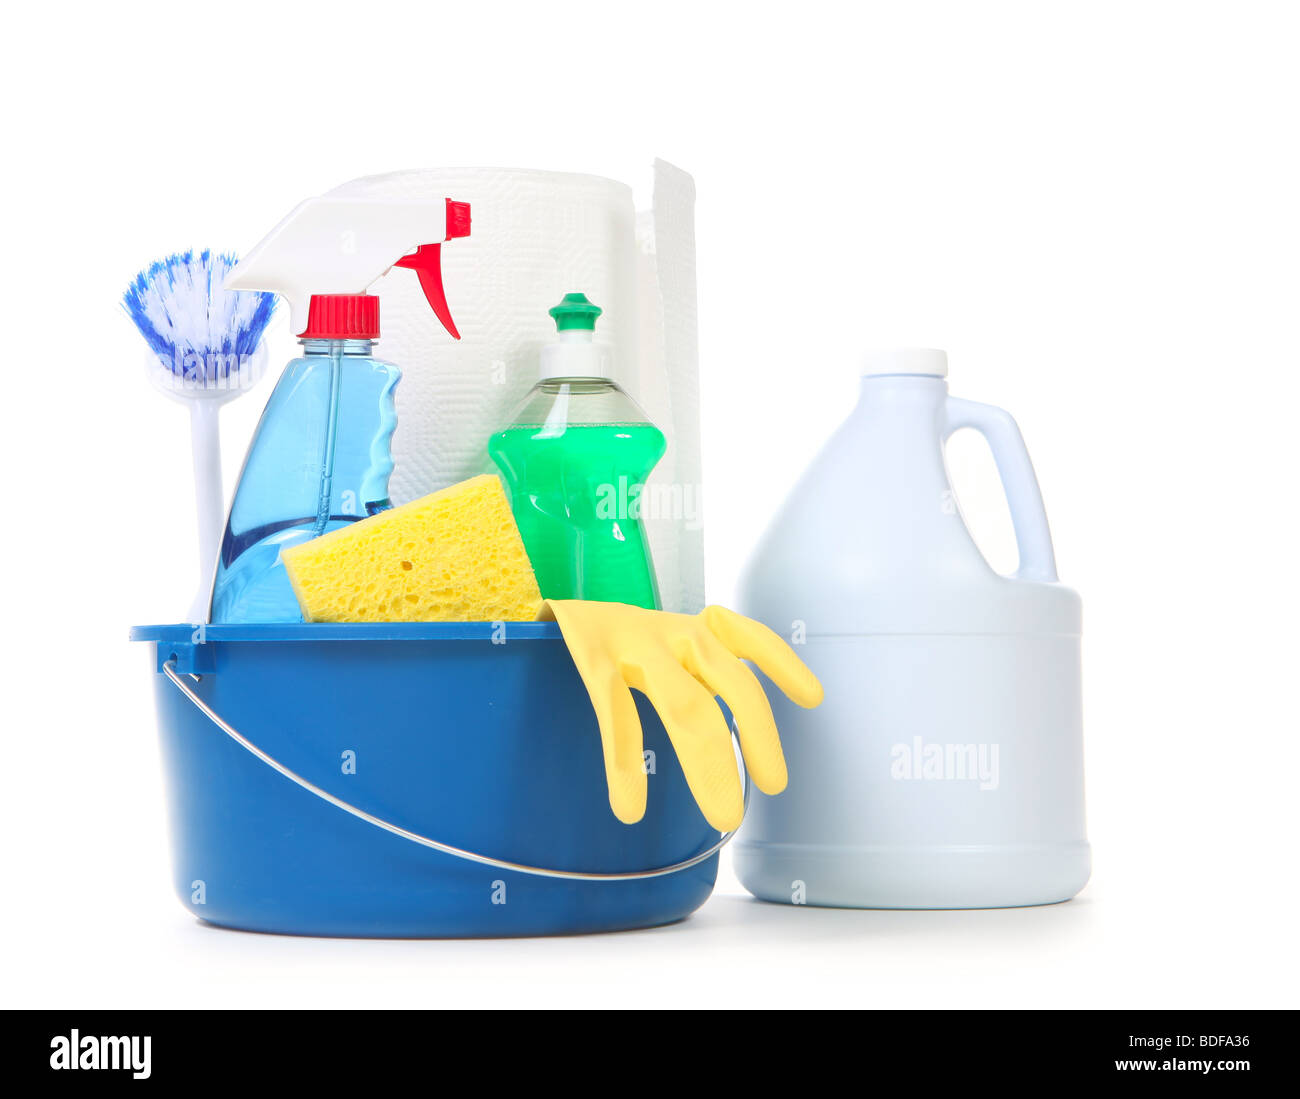 Washing and cleaning stuff Stock Photo by ©JanPietruszka 71079985